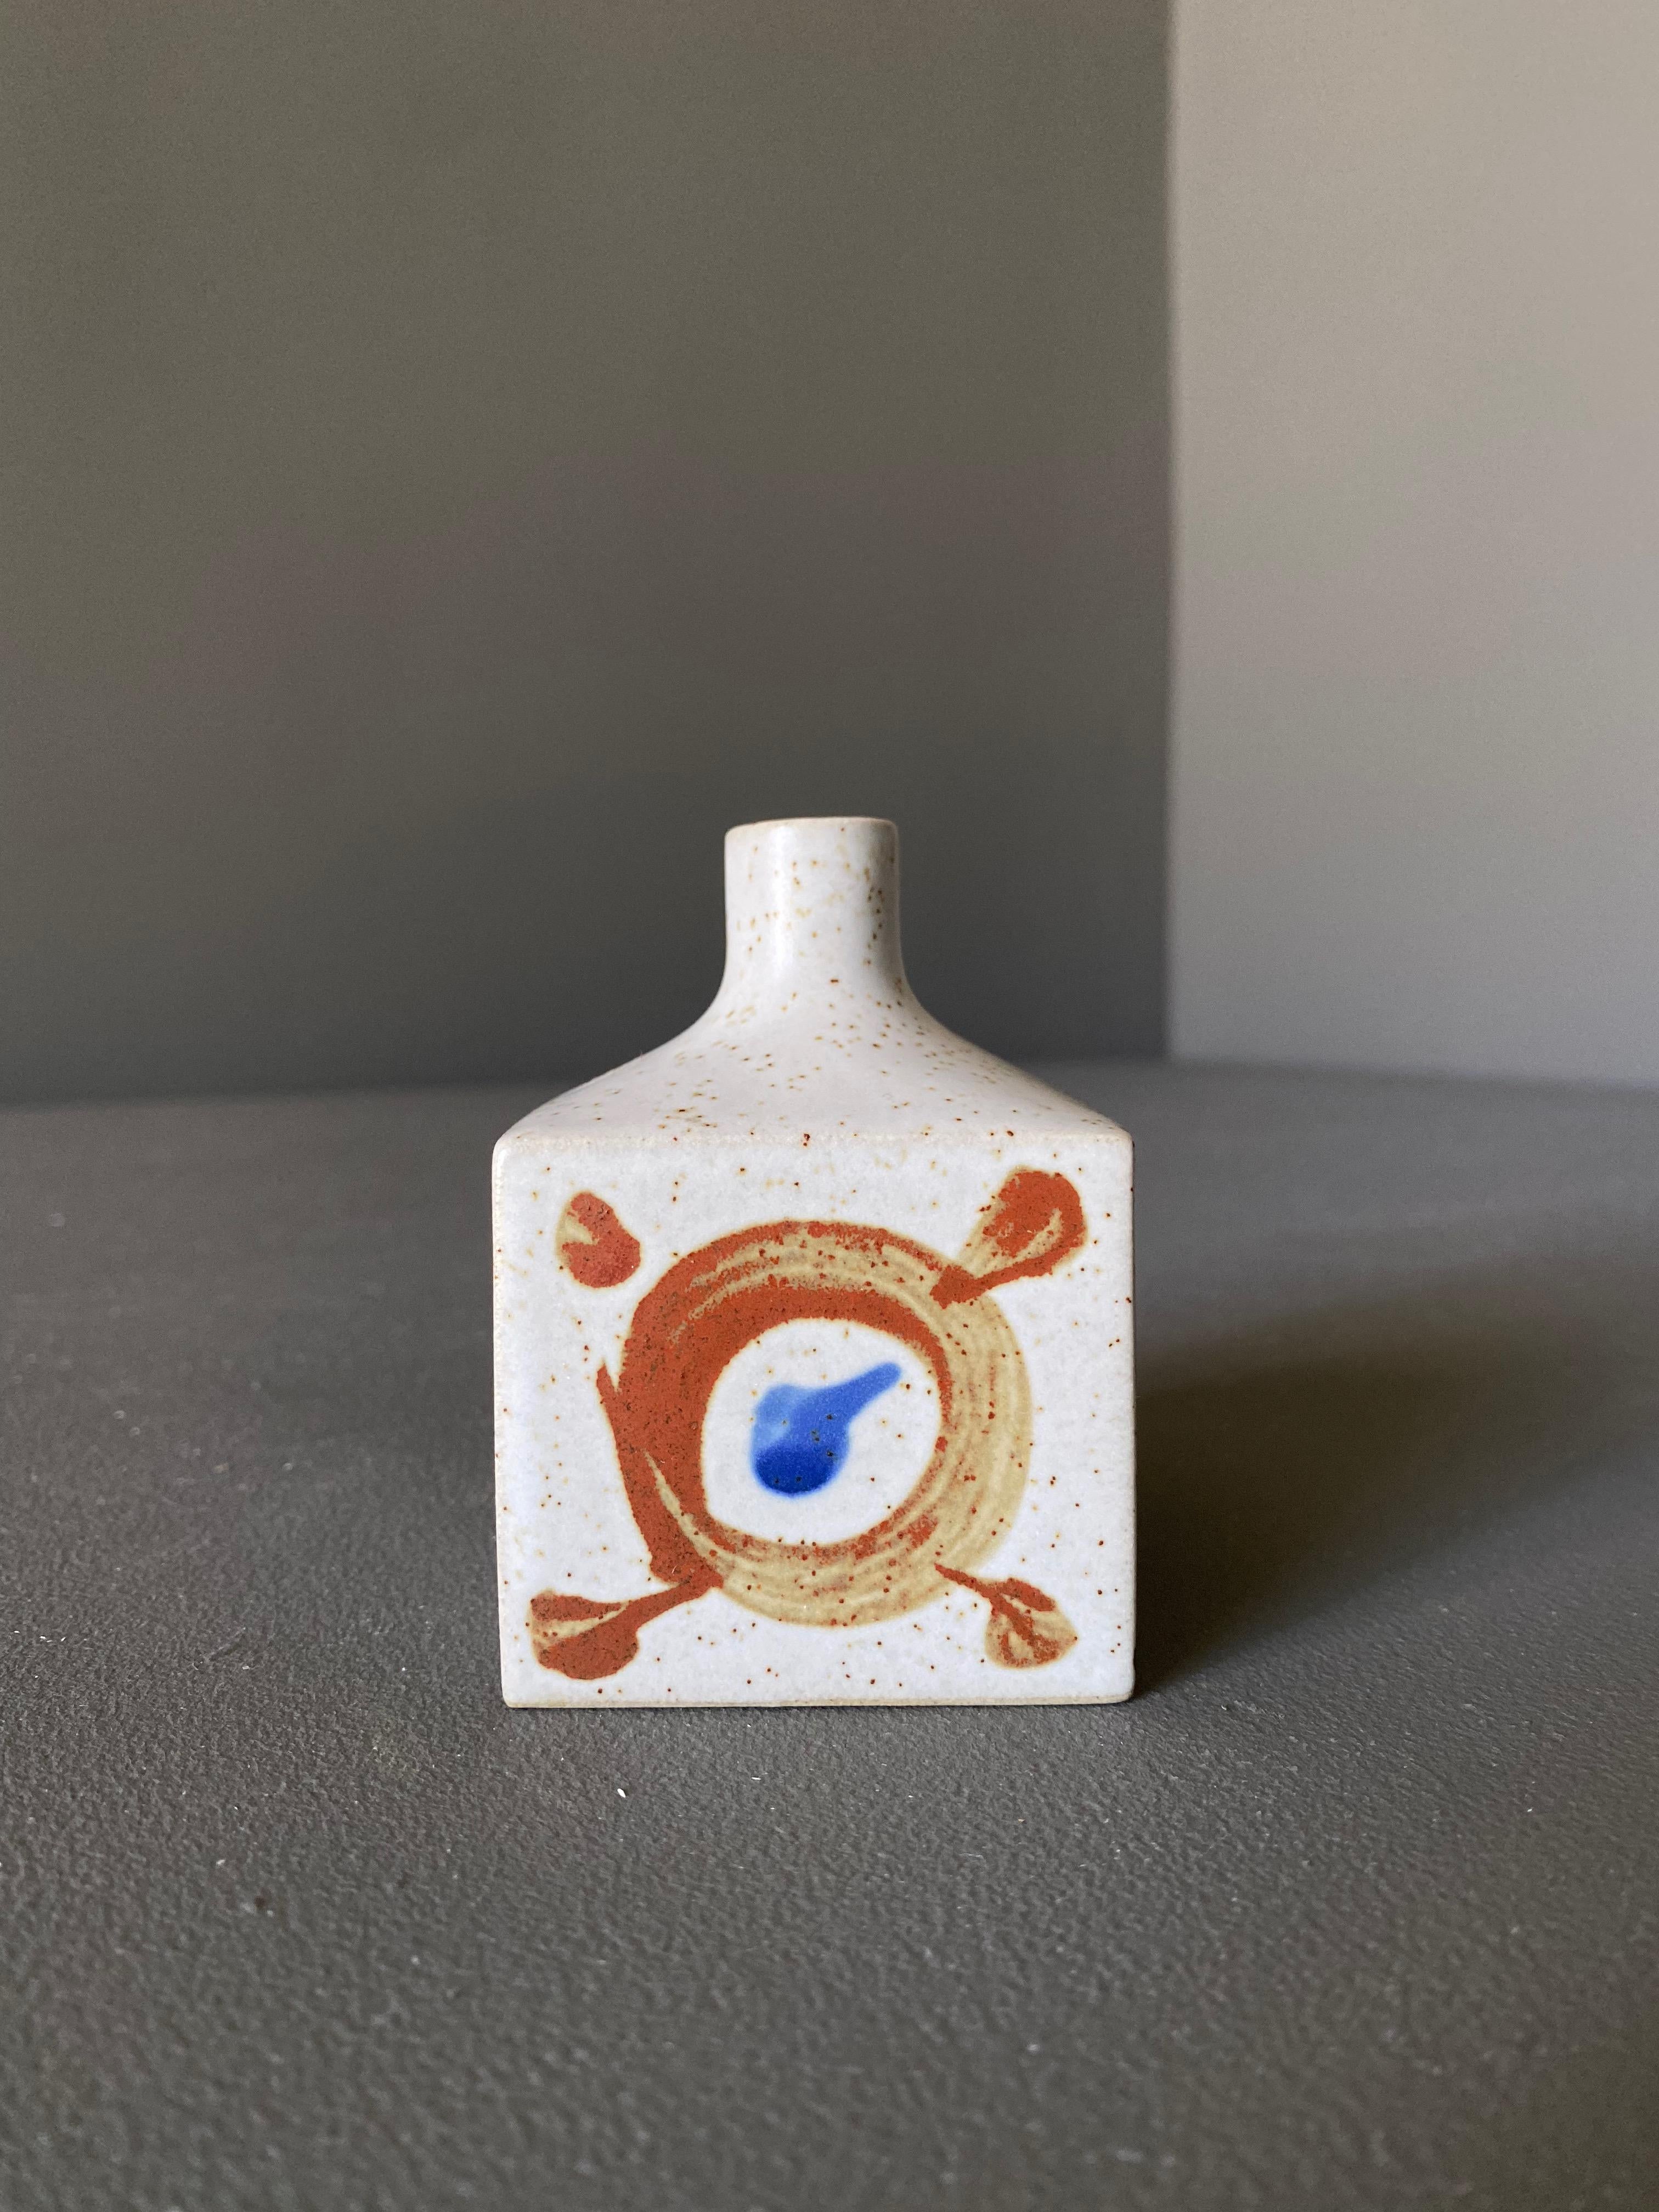 Square ceramic bud vase by Otigari, Japan 1960s.